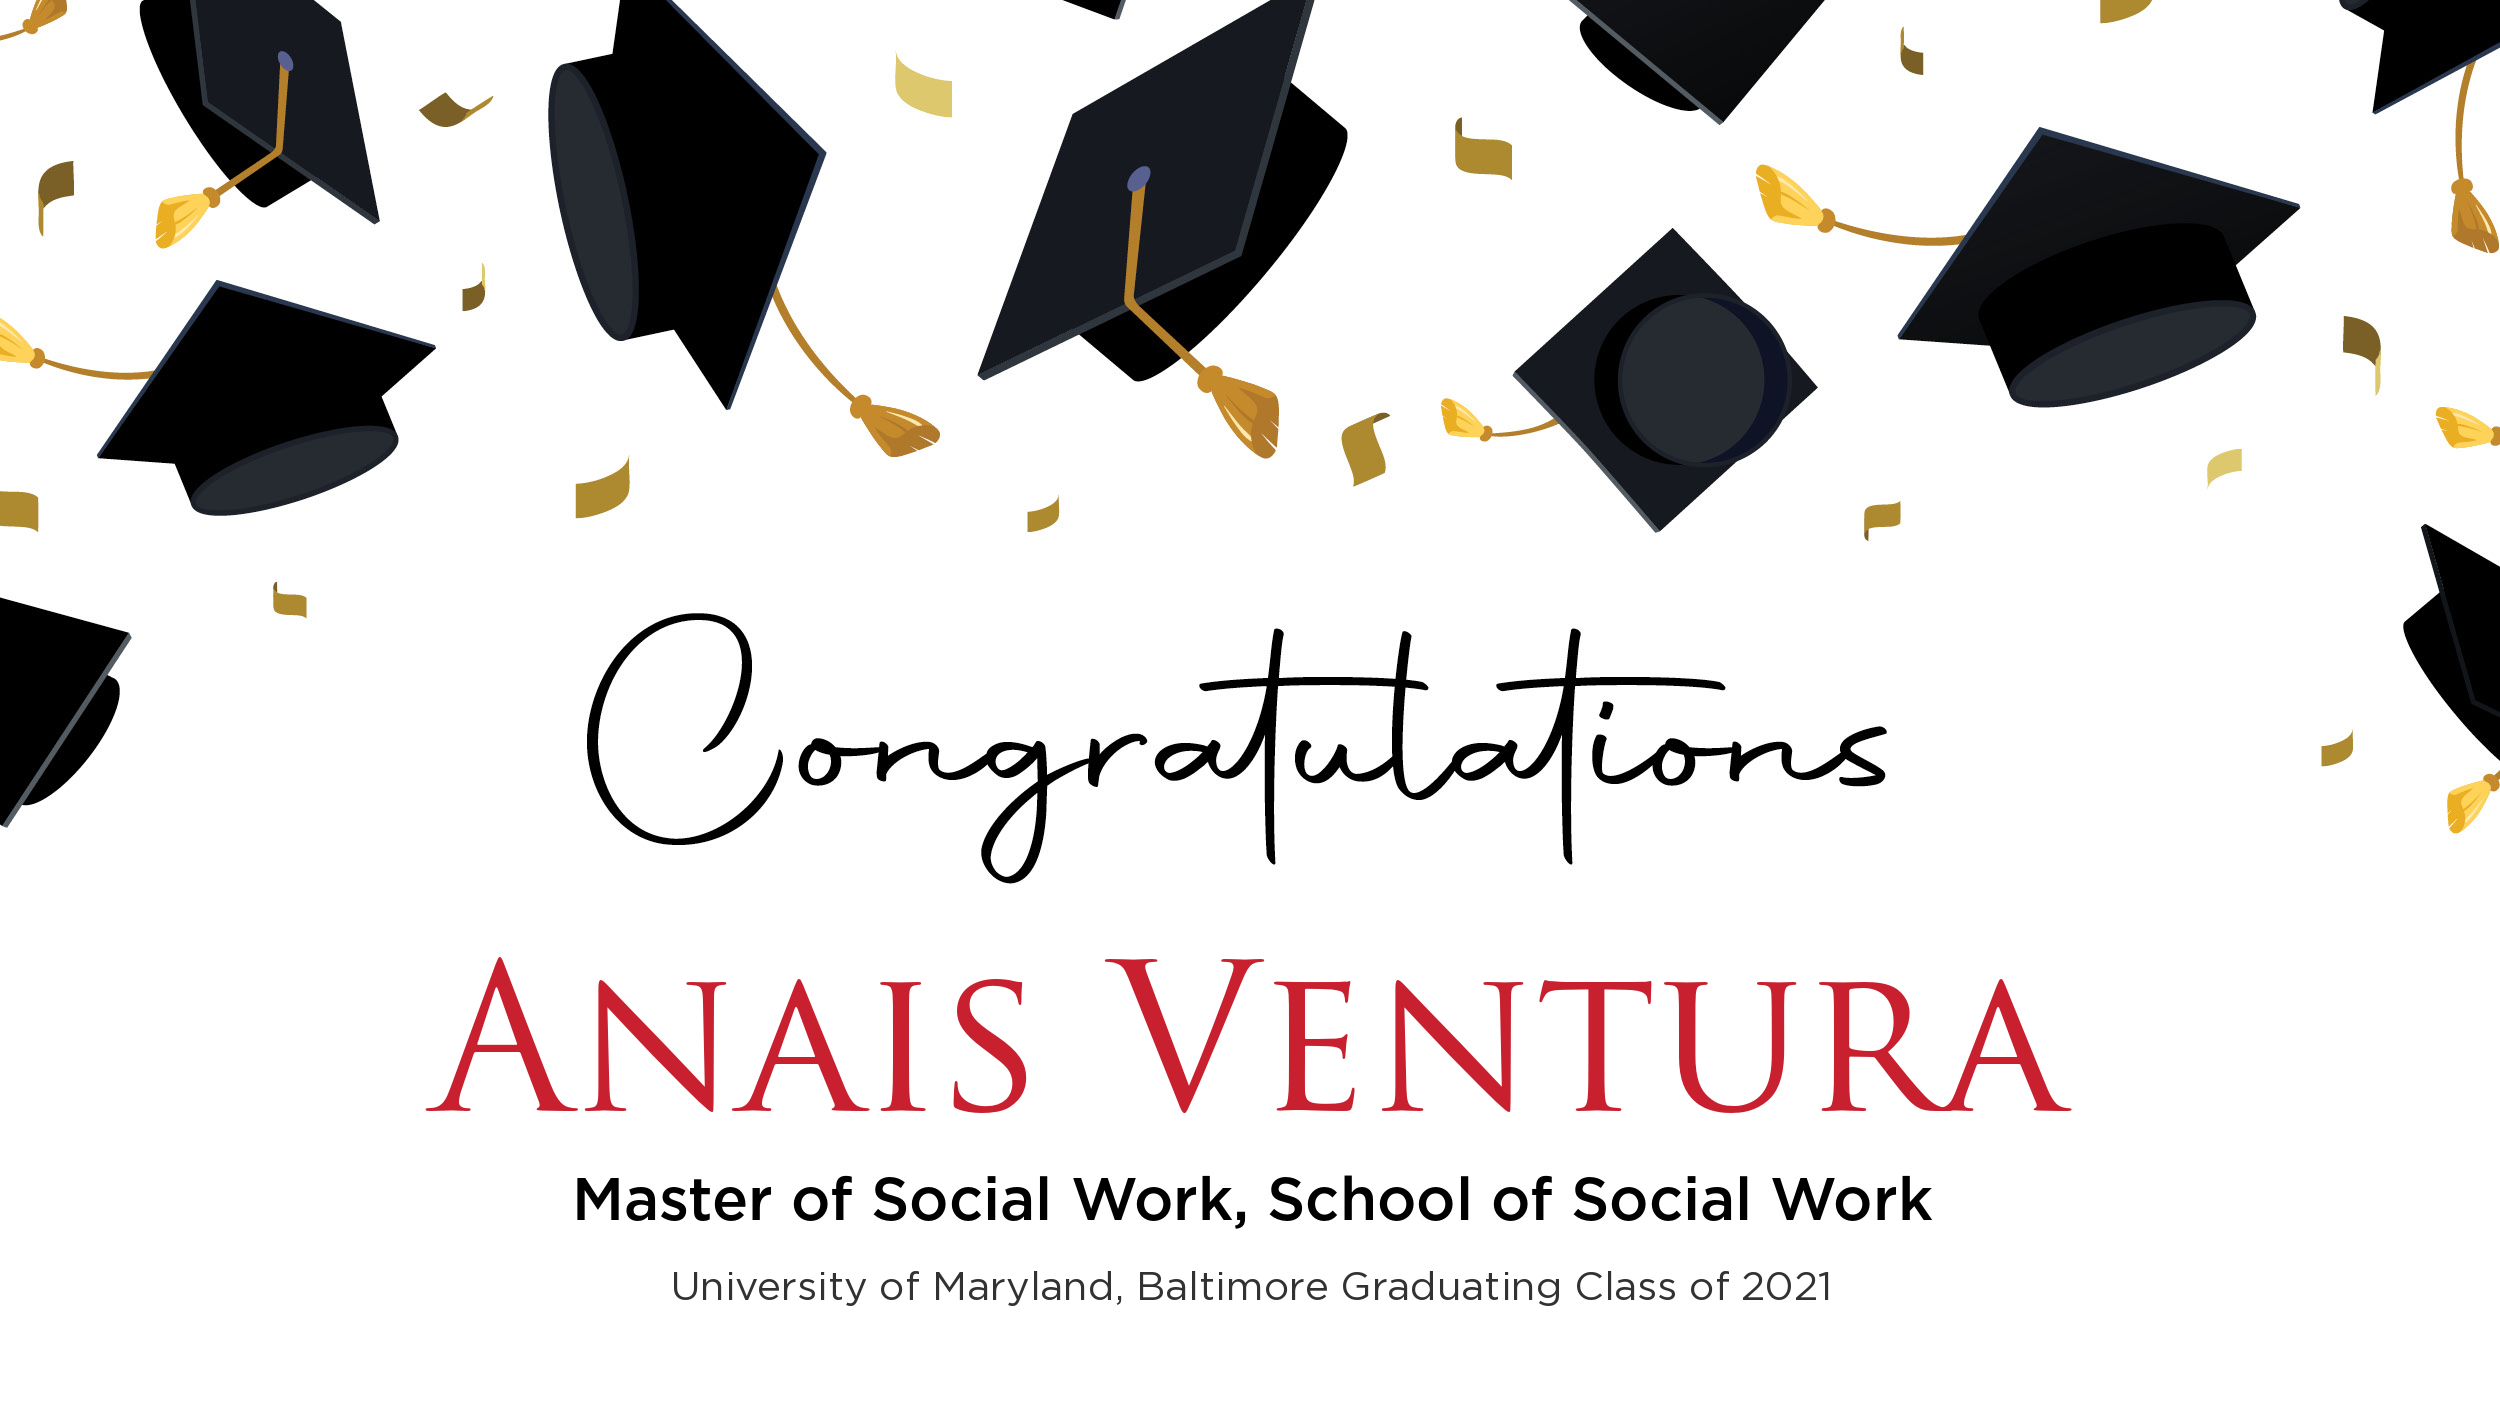 Congratulations Anais Ventura, Master of Social Work